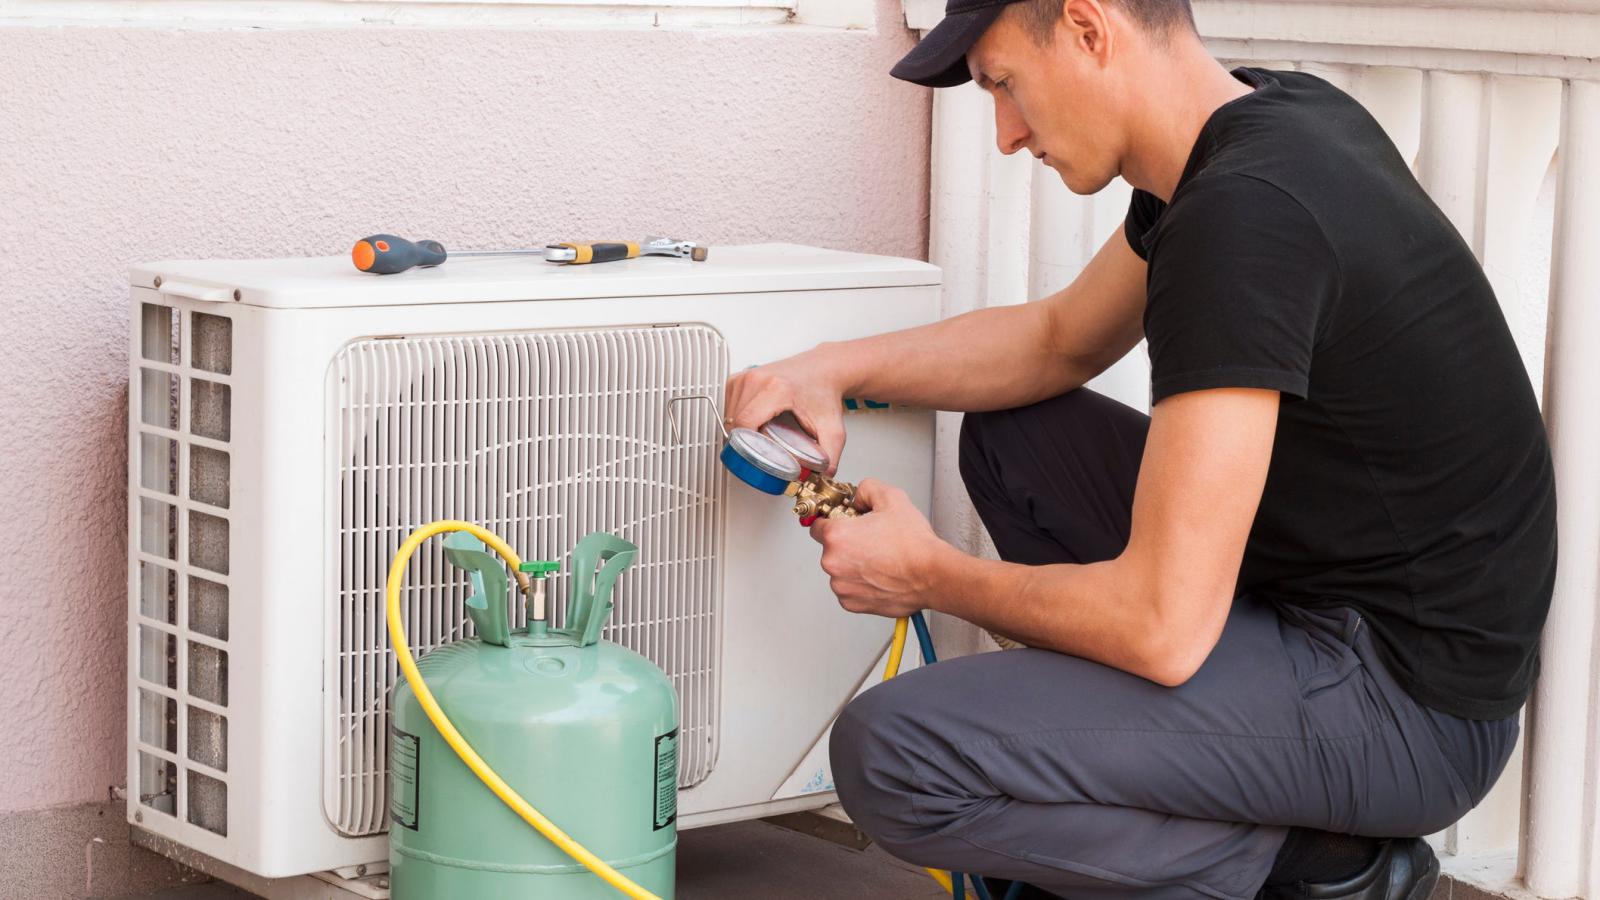 Dịch vụ sửa chữa điều hòa tại nhà sẽ giúp bạn bơm gas khi điều hòa thiếu gas